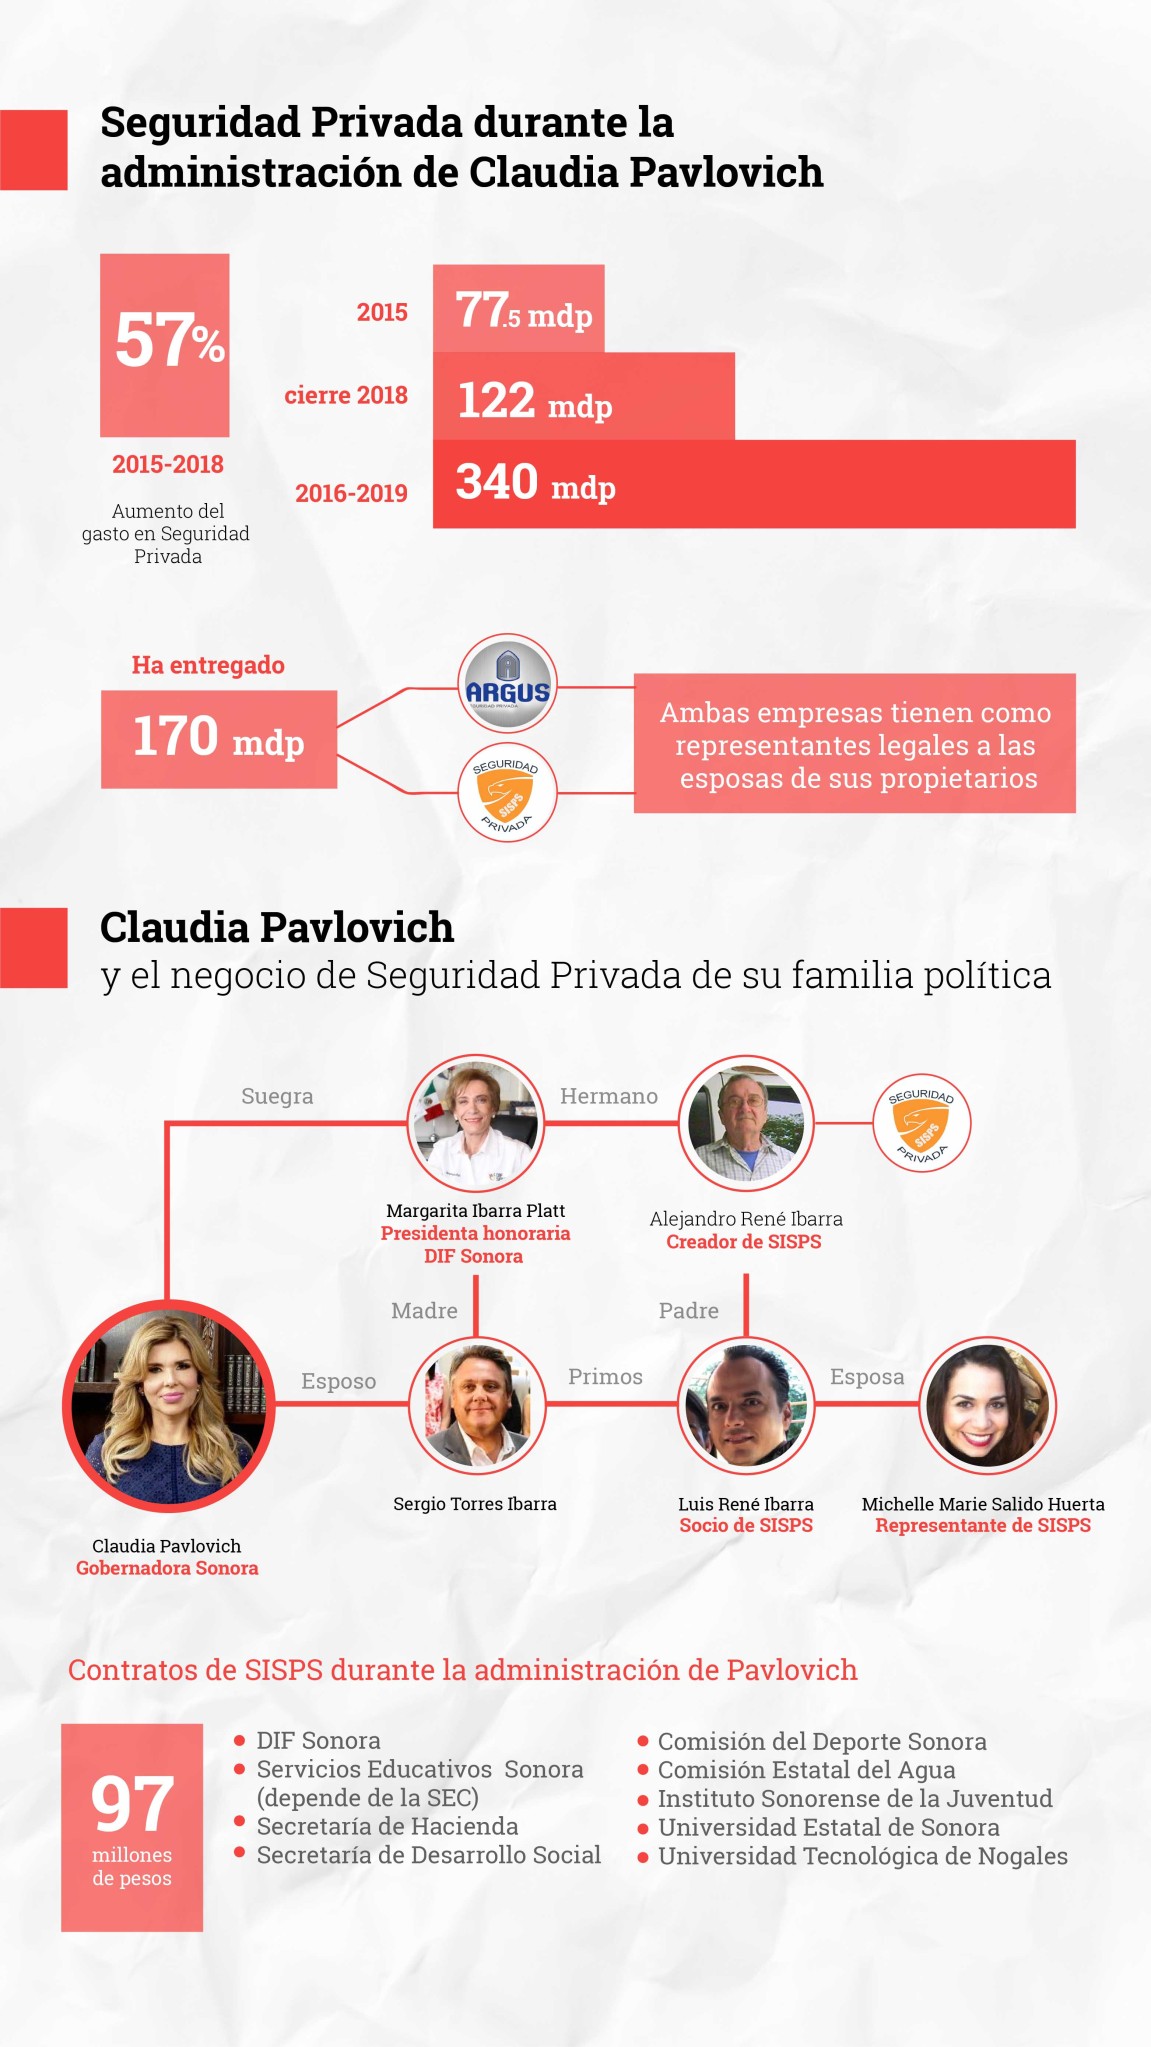 $!Primo del esposo de gobernadora de Sonora, Claudia Pavlovich, ha recibido 100 mdp en contratos